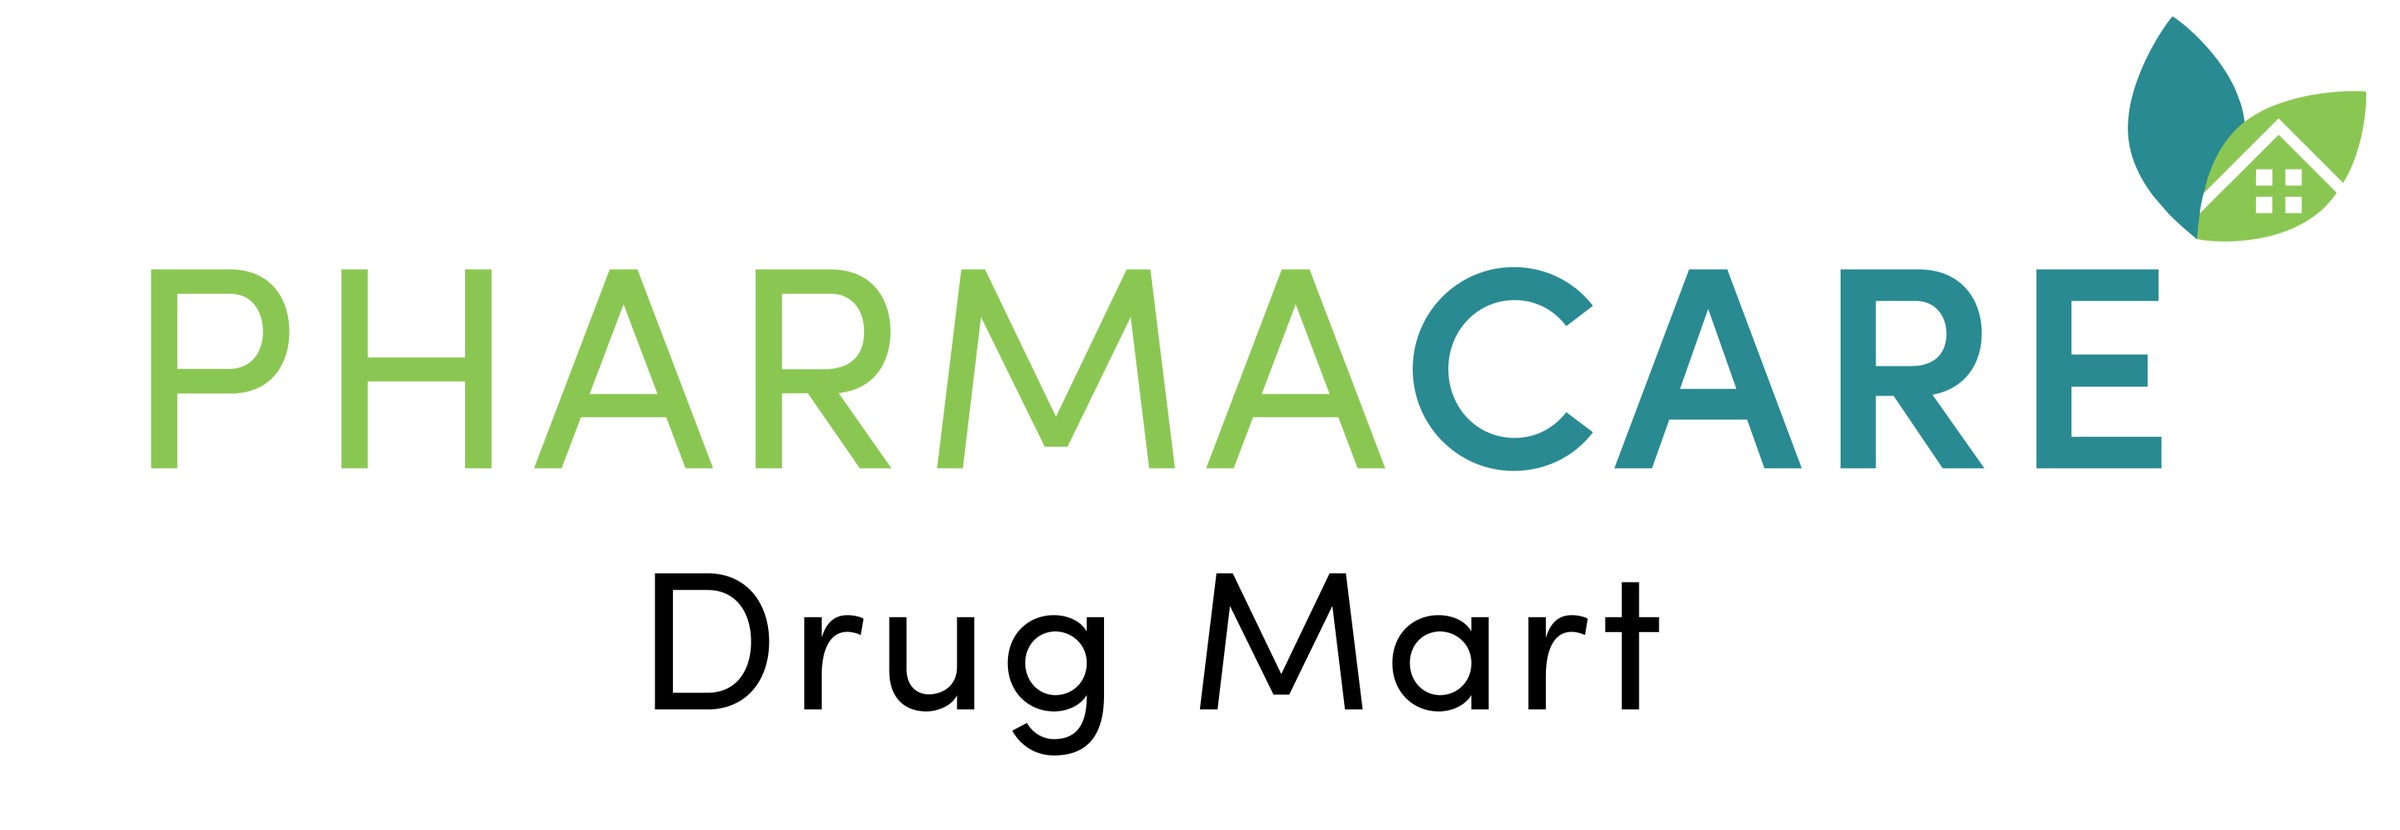 Pharmacy | Pharmacare Drug Mart